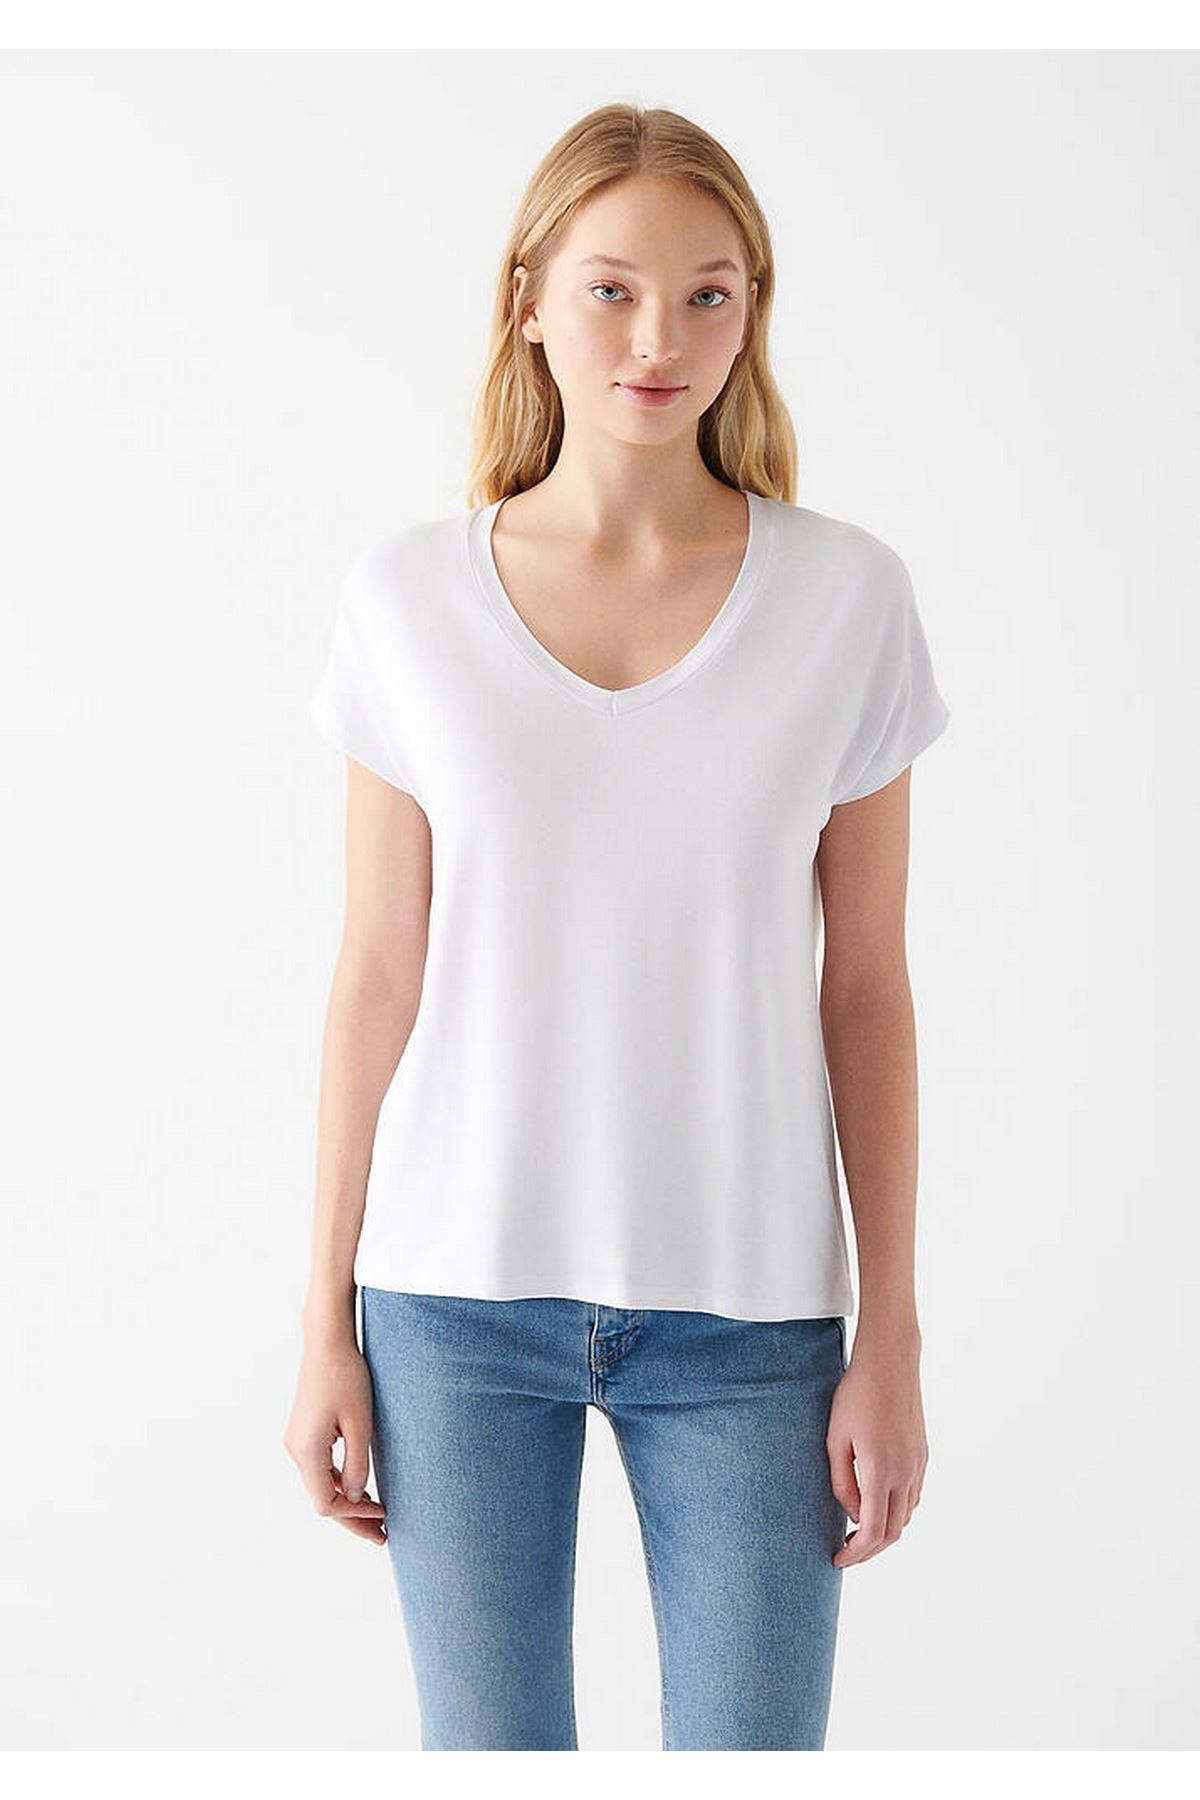 Basıc V Yaka Penye Kadın Beyaz Tişört - M167714-620